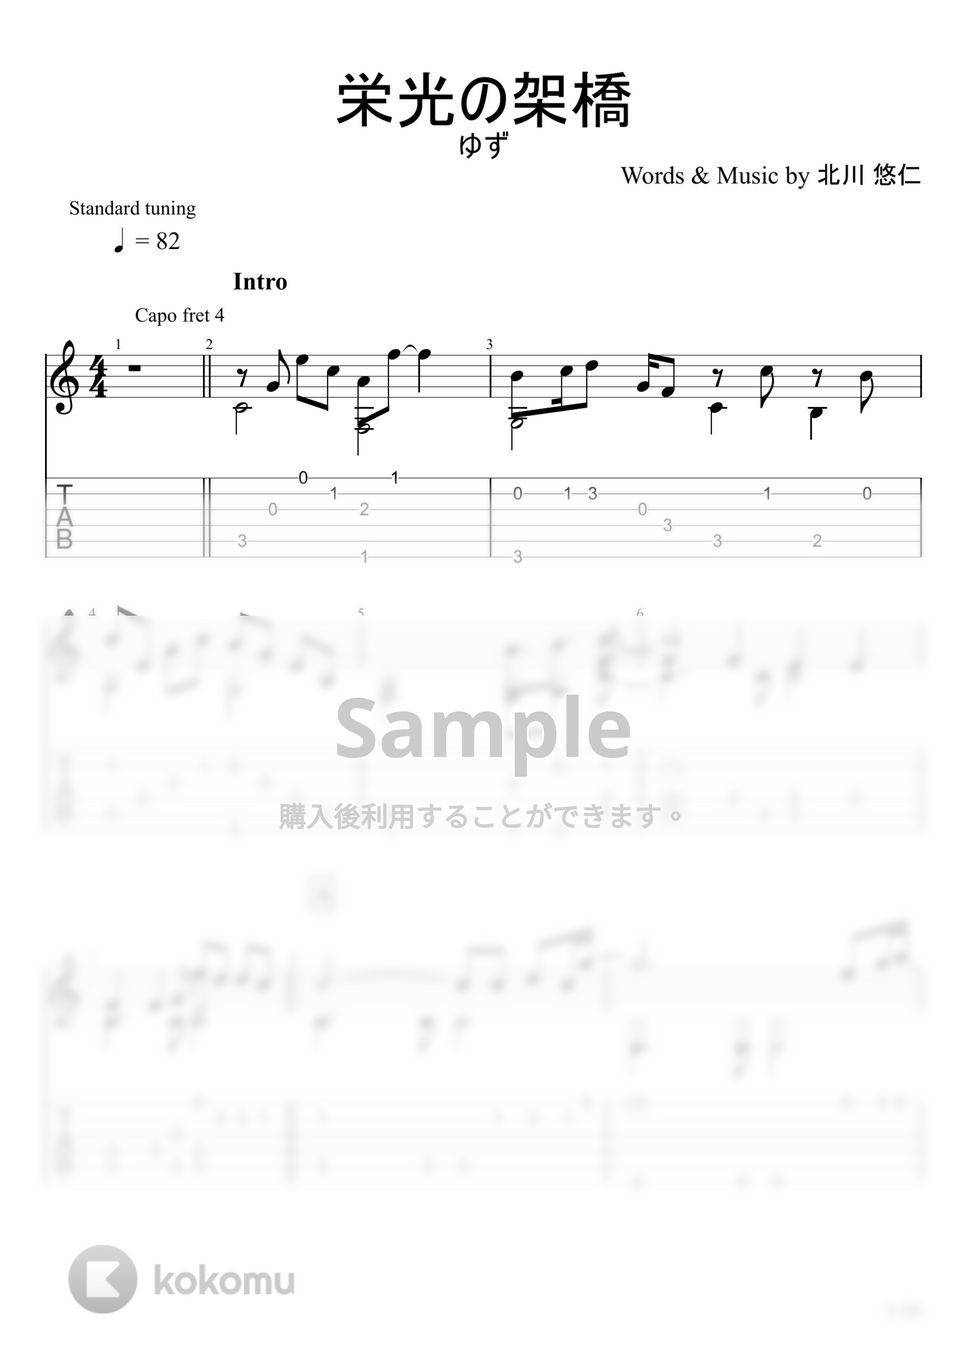 ゆず - 栄光の架橋 (ソロギター) by u3danchou